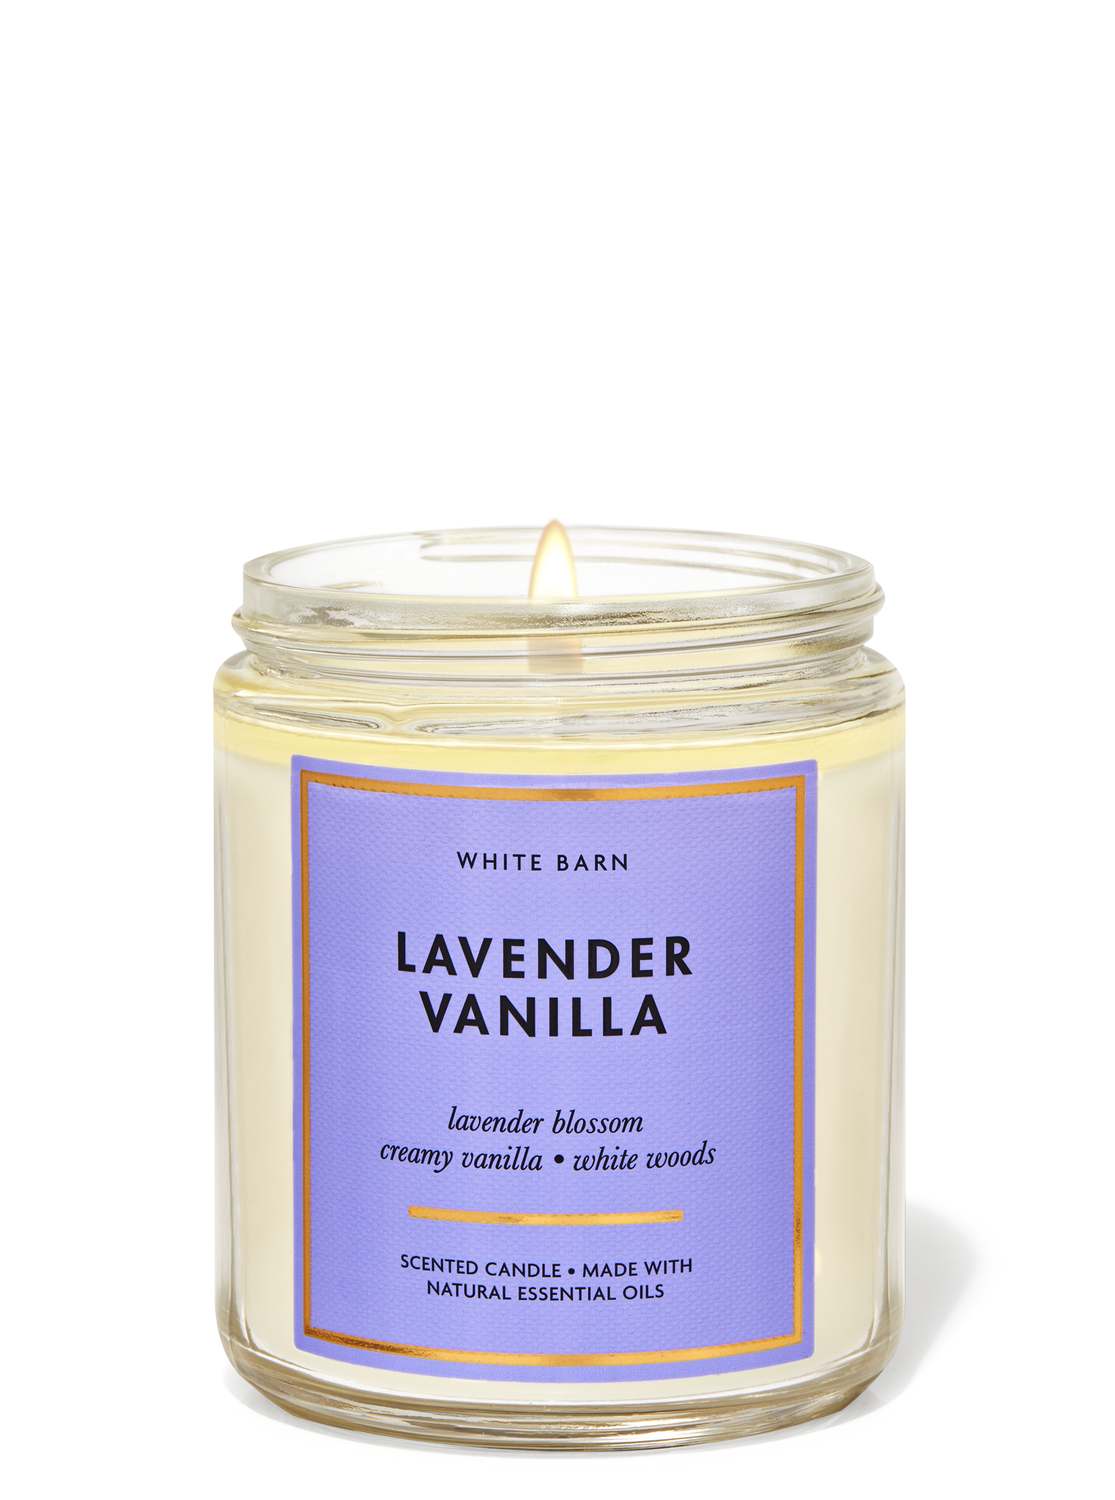 Lavender Vanilla Signature Single Wick Candle